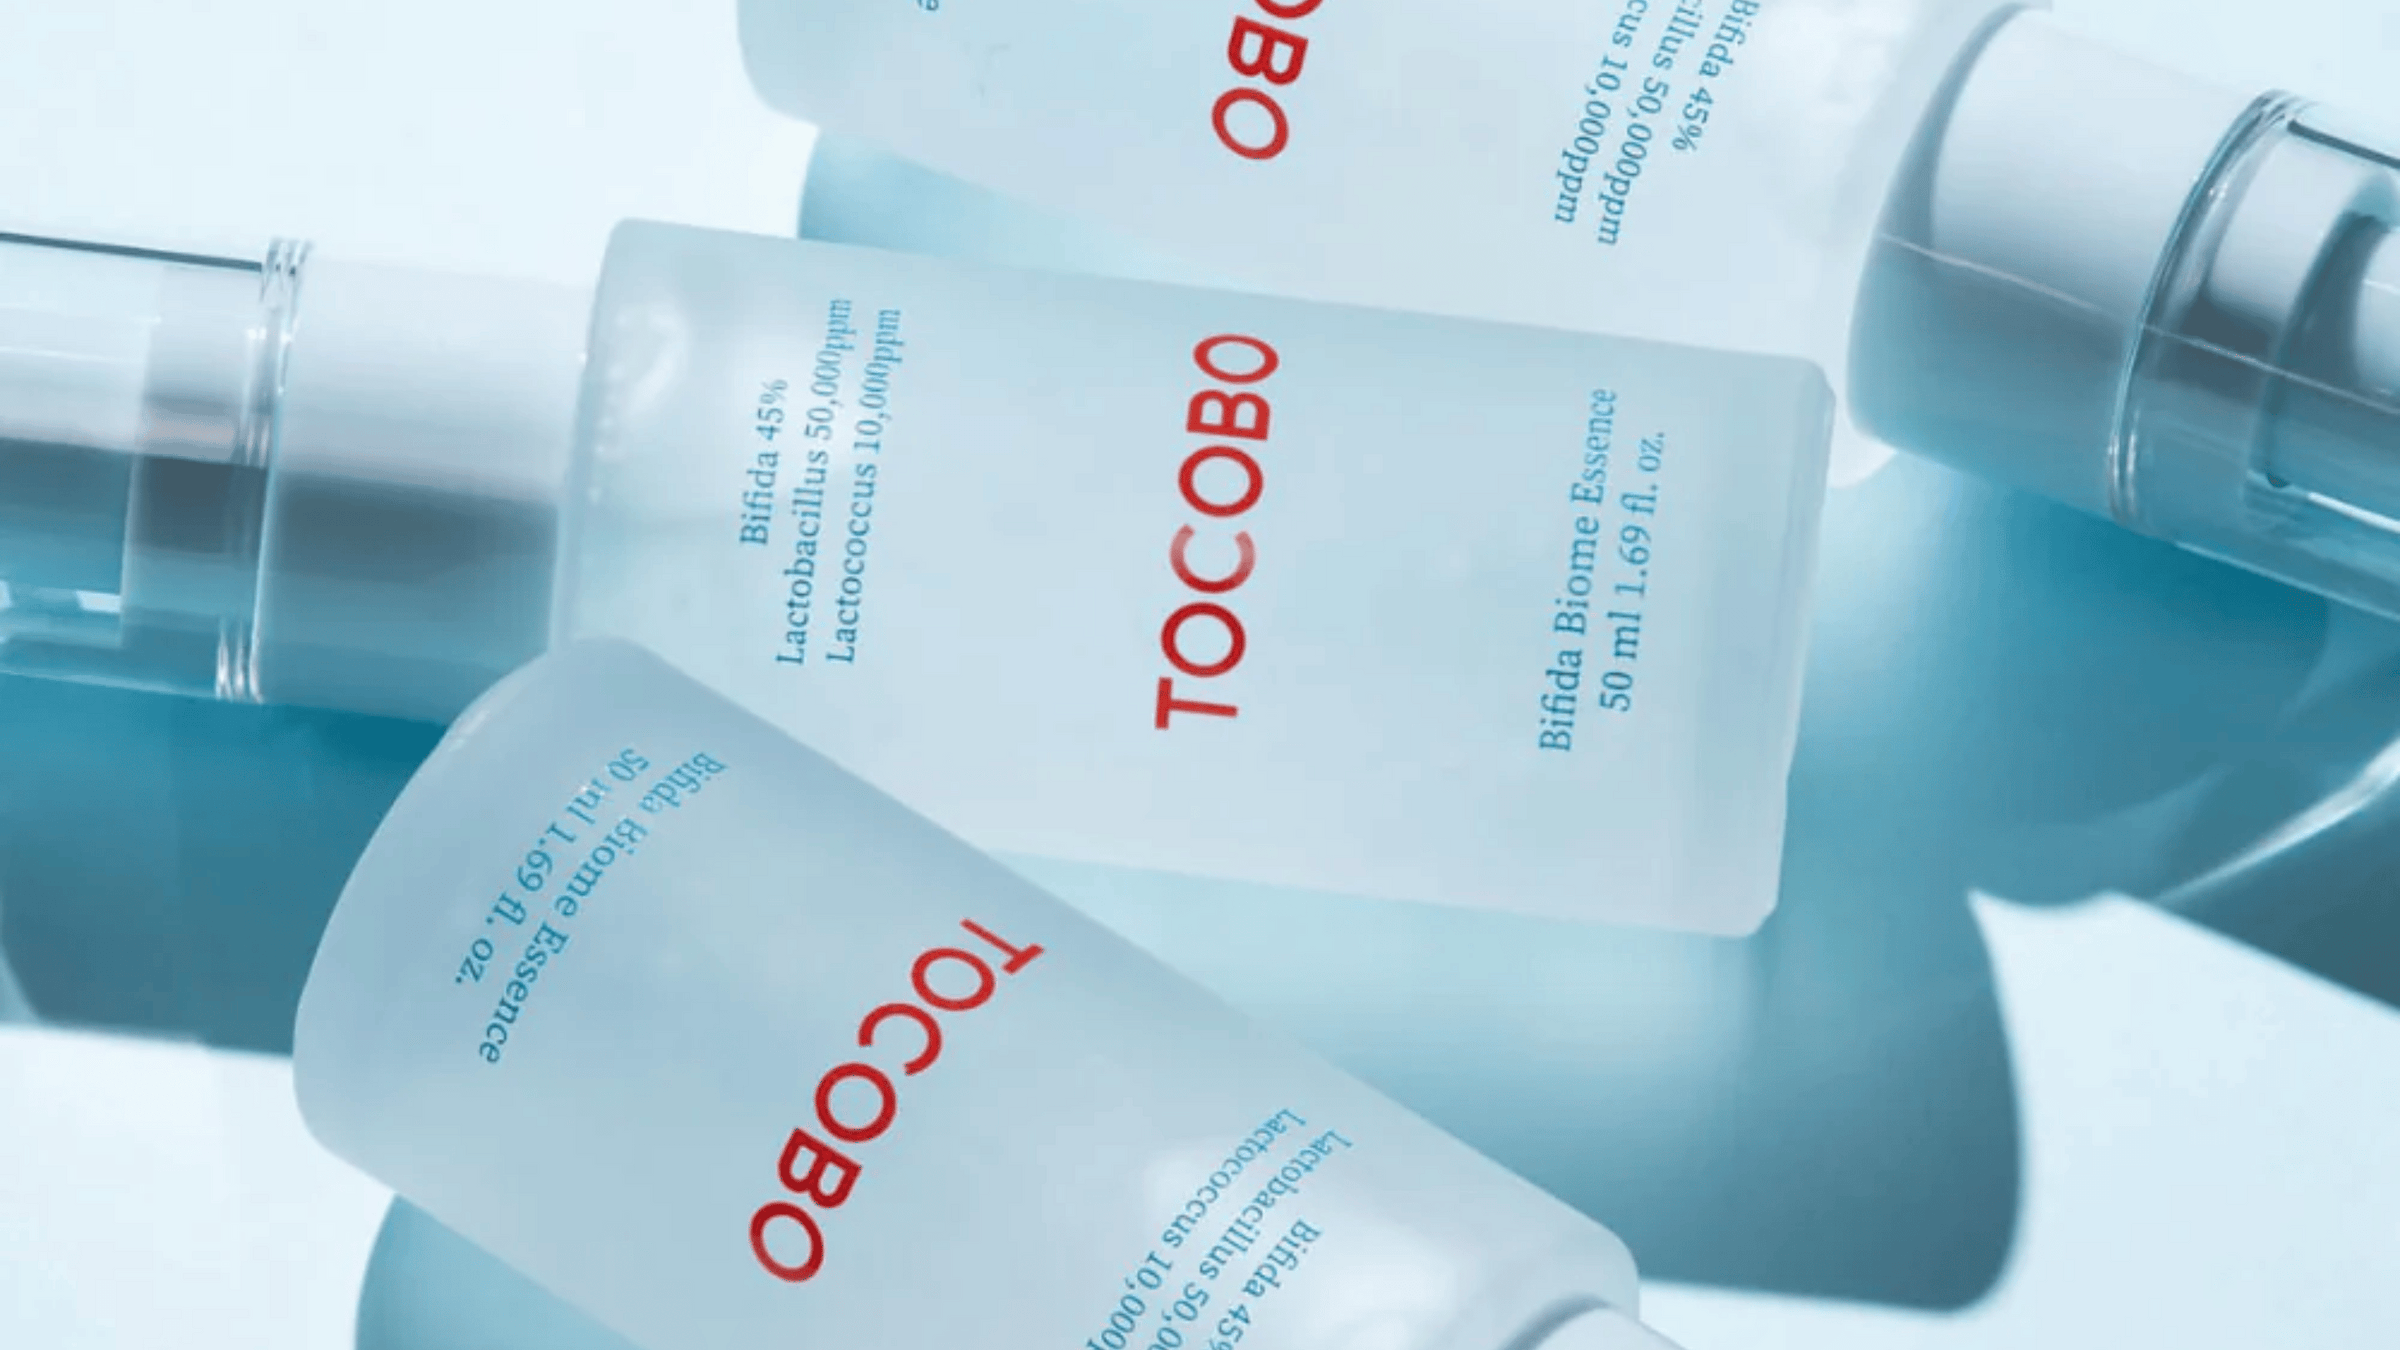 Tre flaskor TOCOBO-produkter på en blå yta.